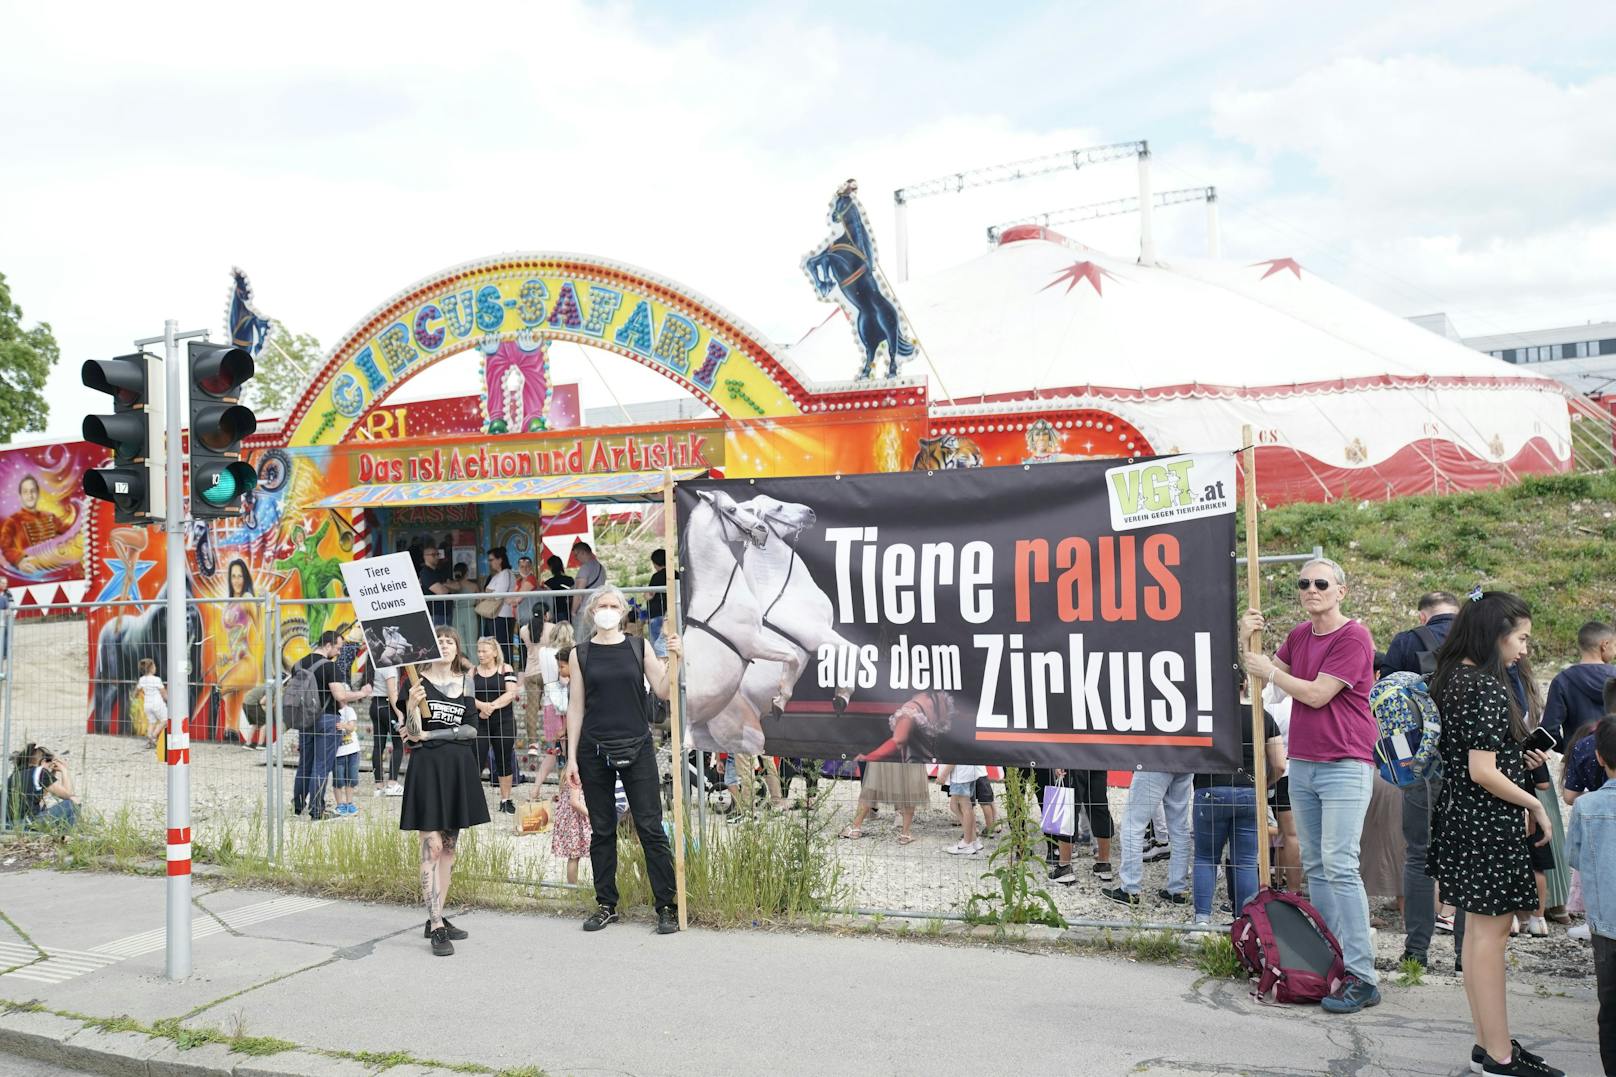 Mit Plakaten fanden sich die Tierschützer vor dem Zirkuszelt am Margaretengürtel ein. Das Motto: "Tiere raus aus dem Zirkus".